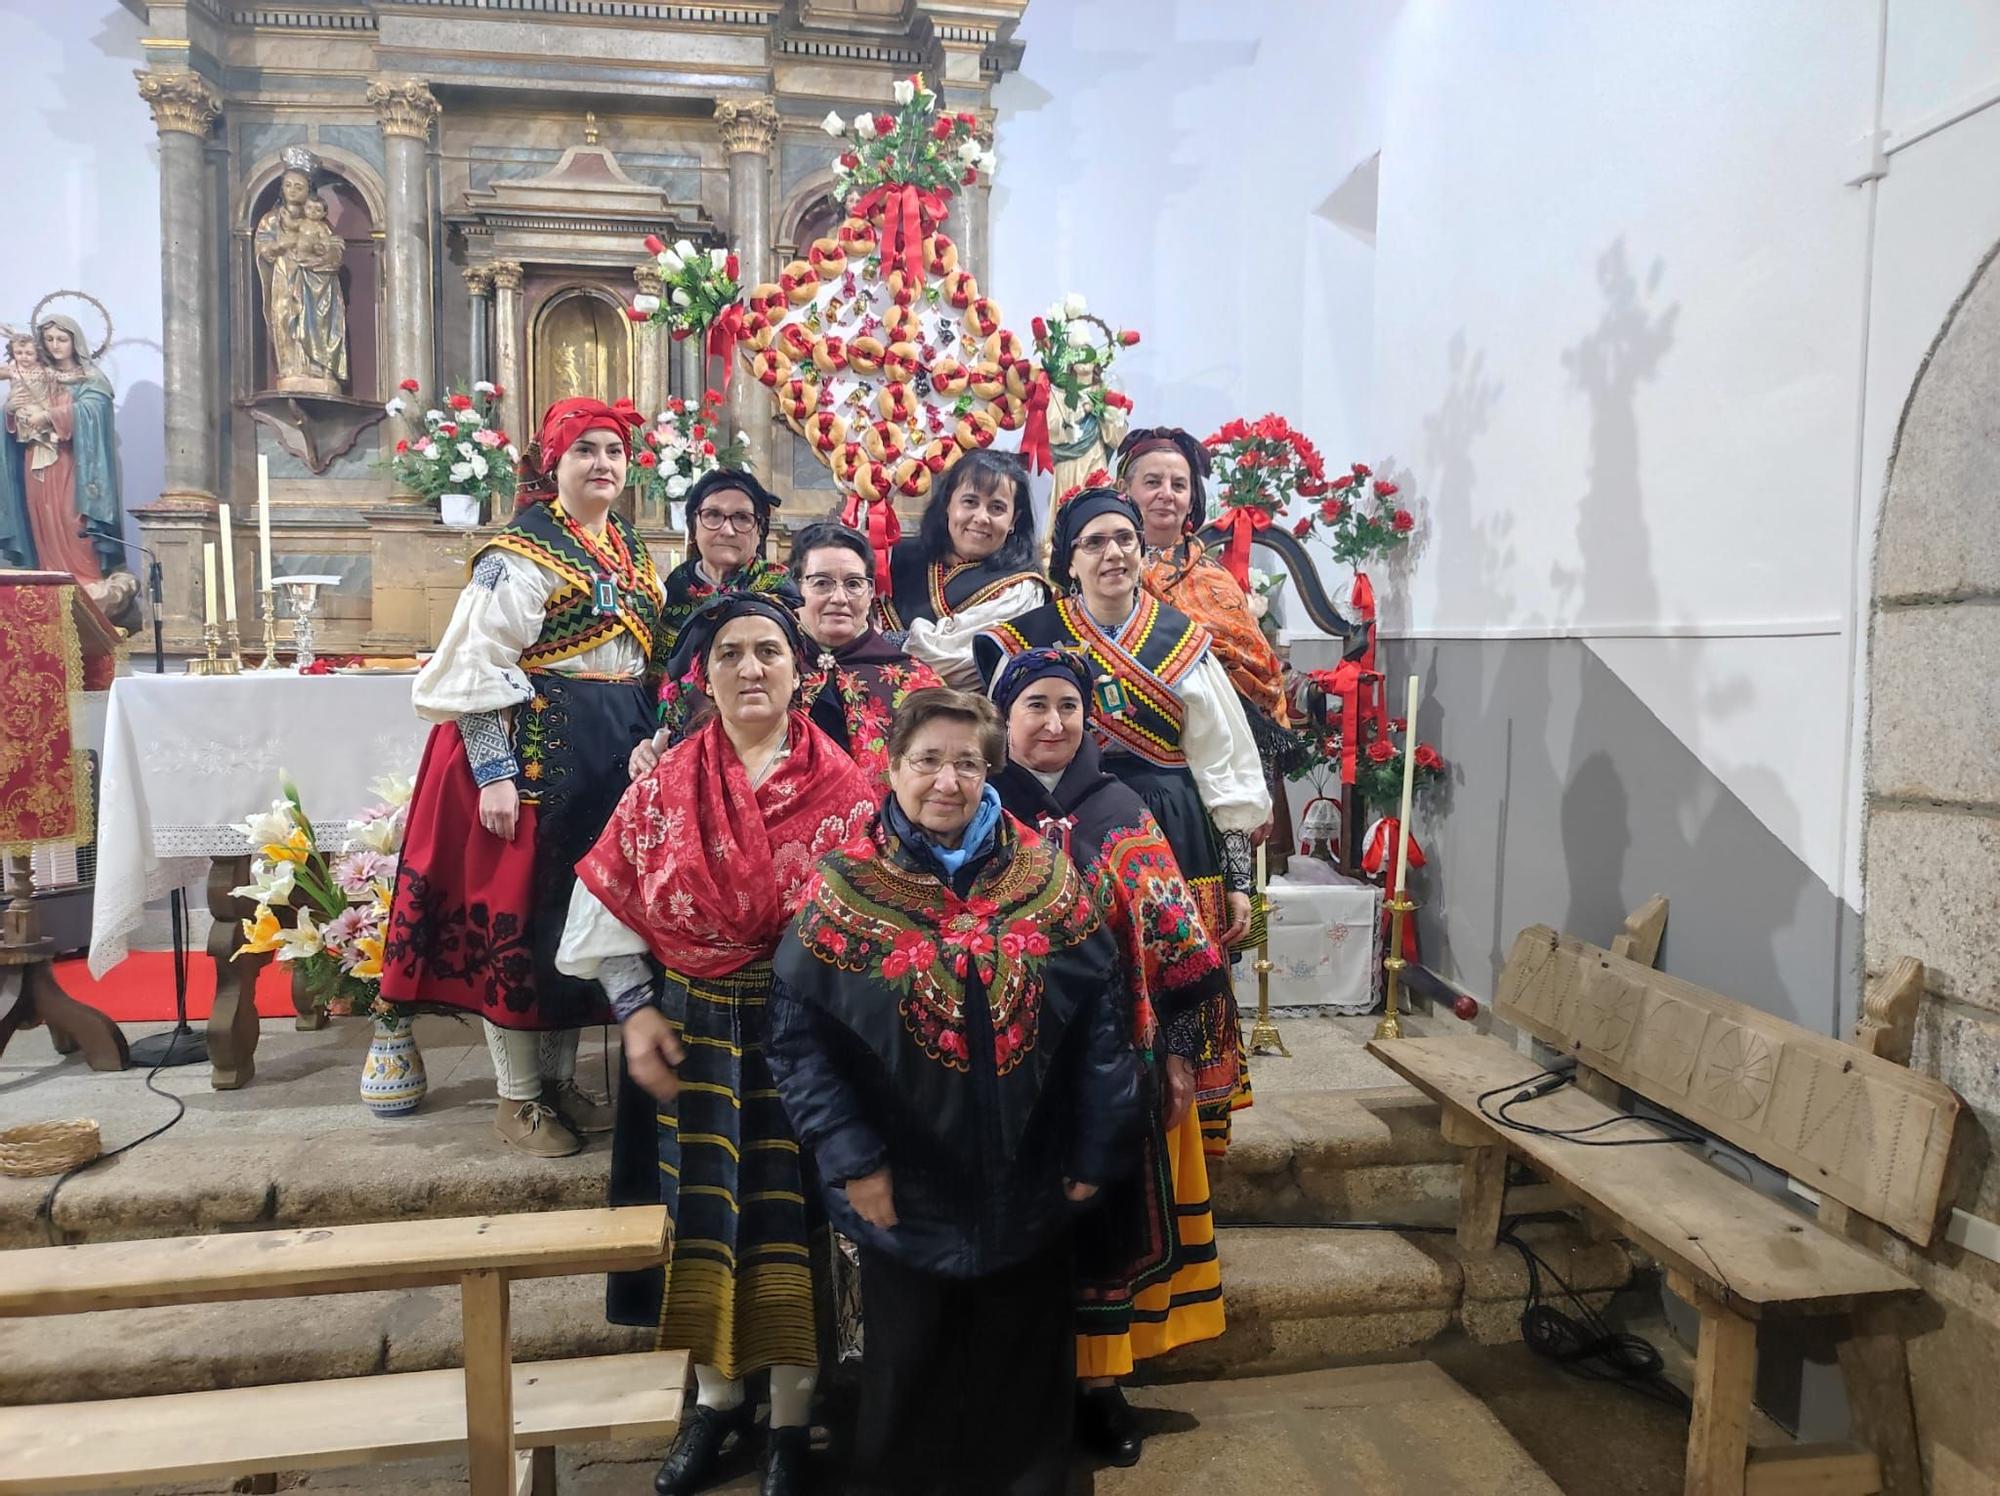 GALERÍA | Procesión en San Vicente de la Cabeza en honor a su patrón